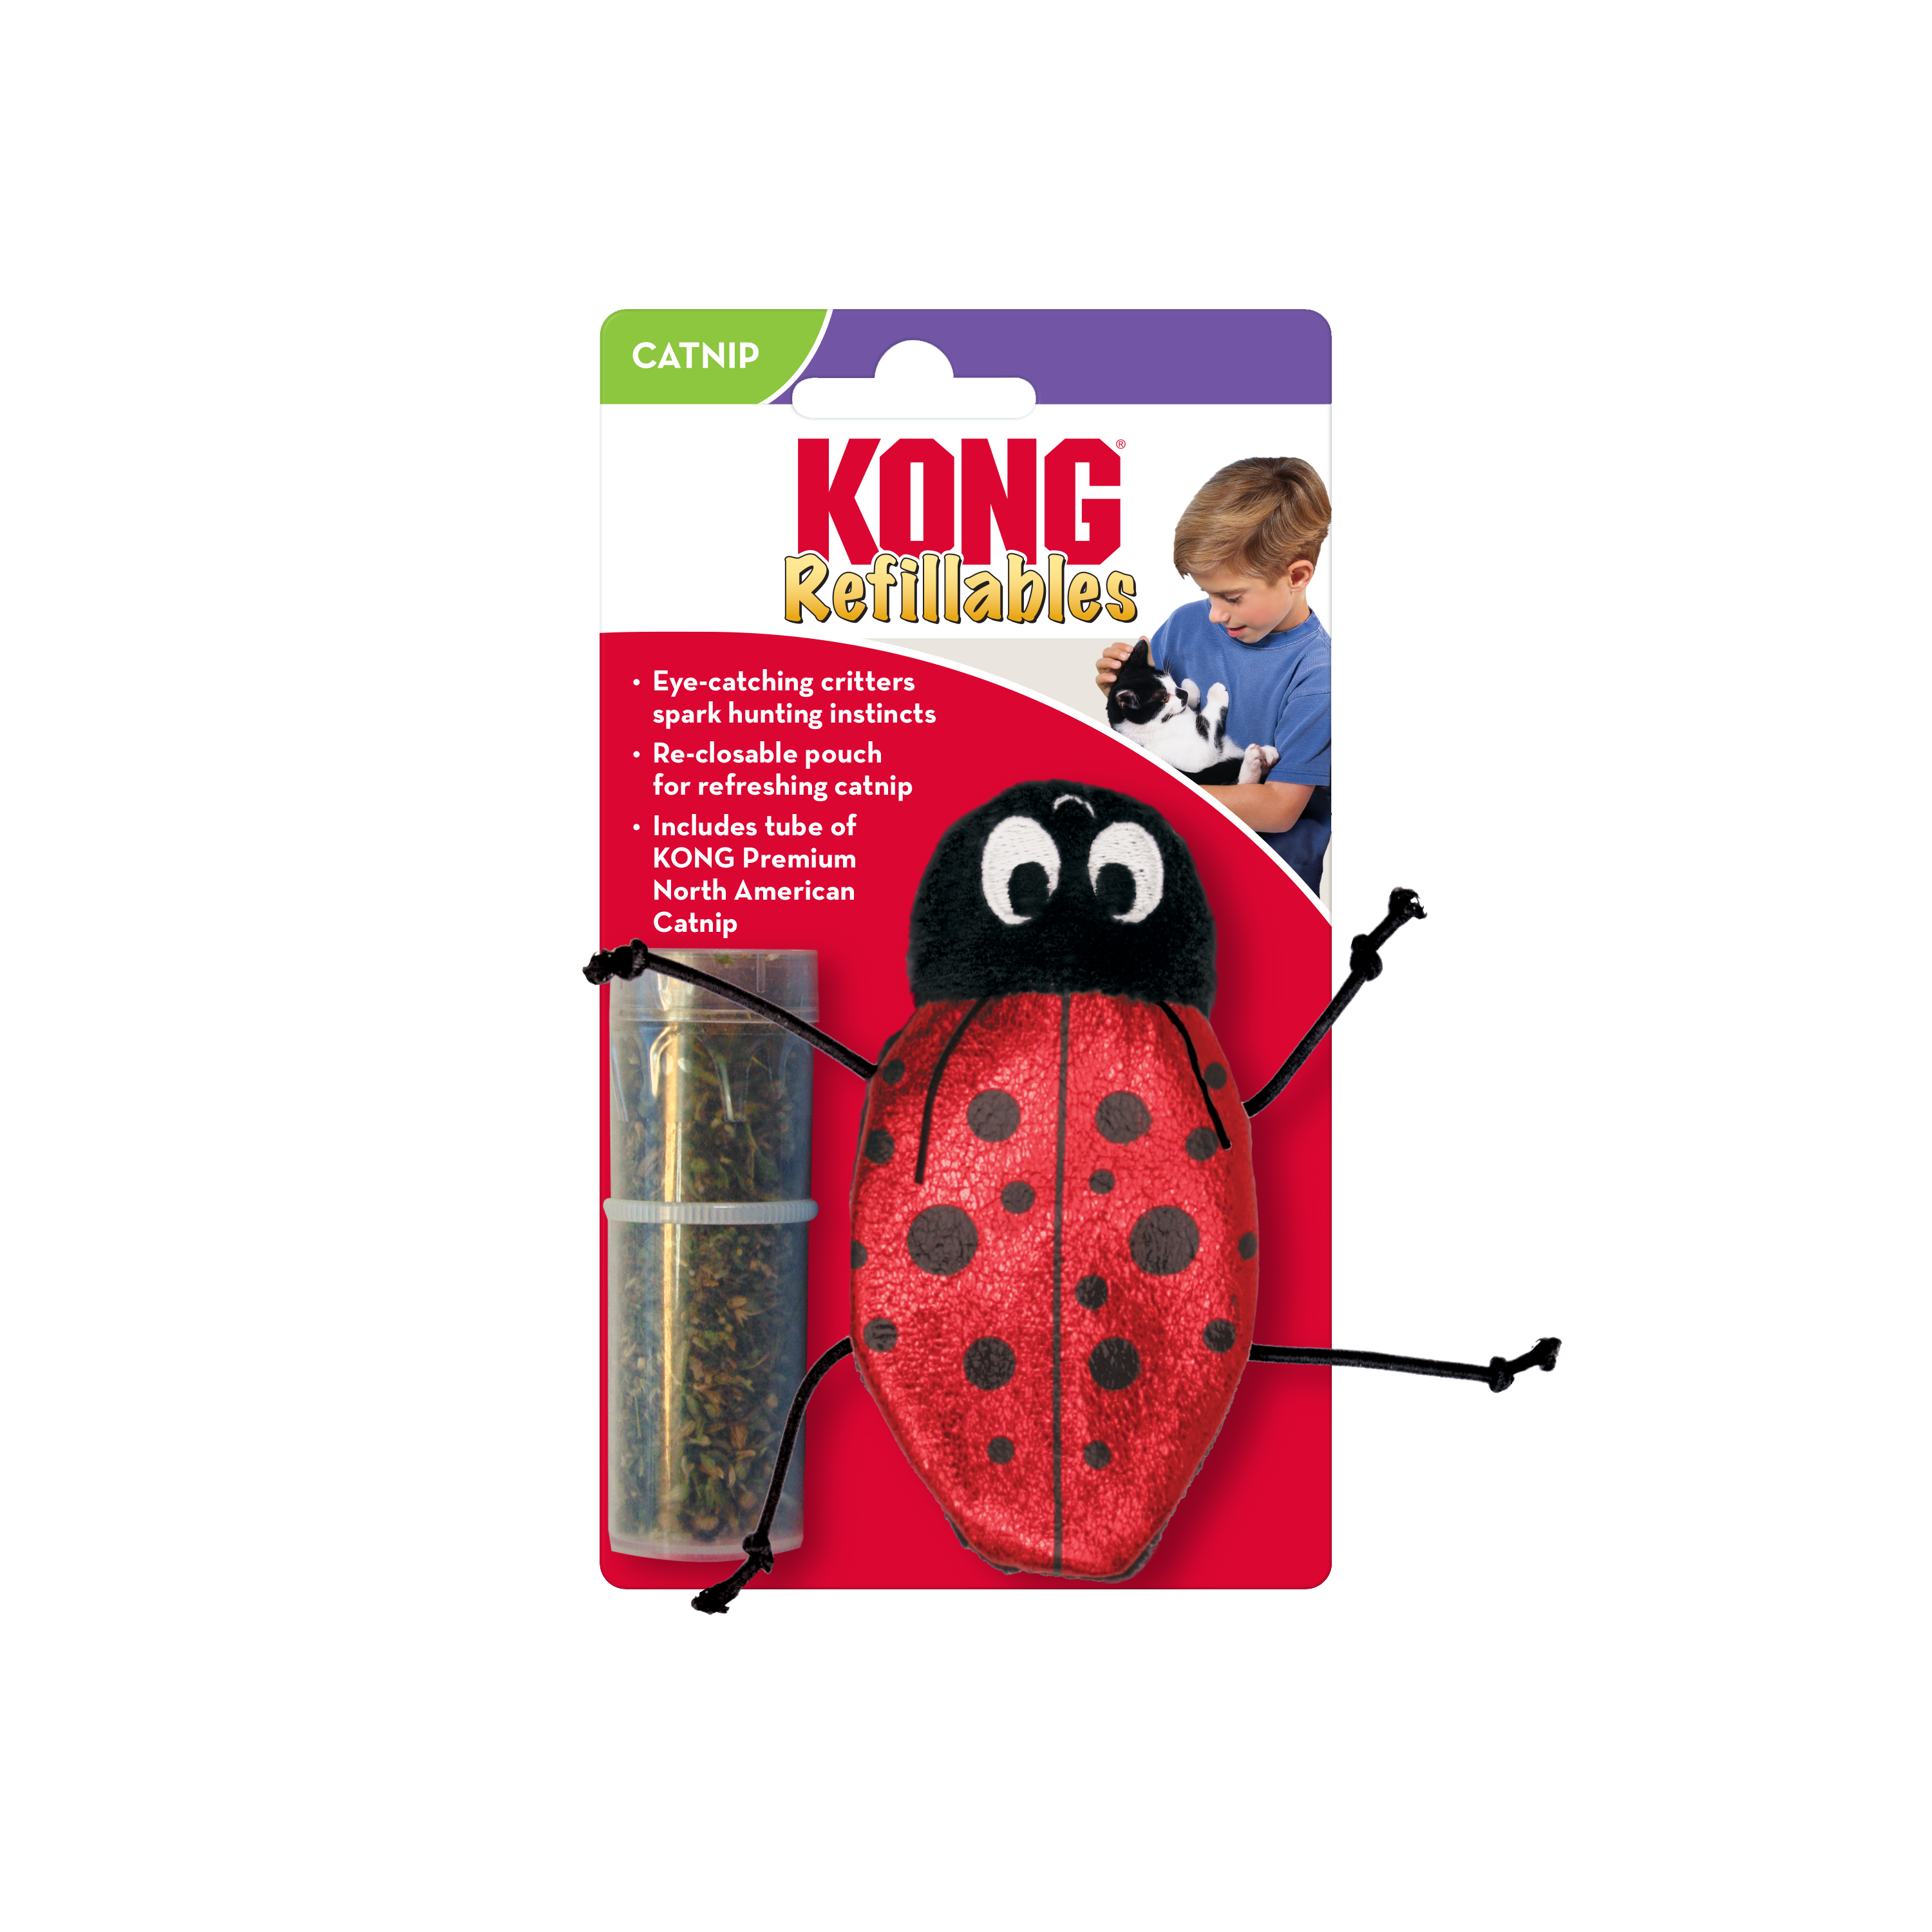 Refillables Ladybug onpack product image